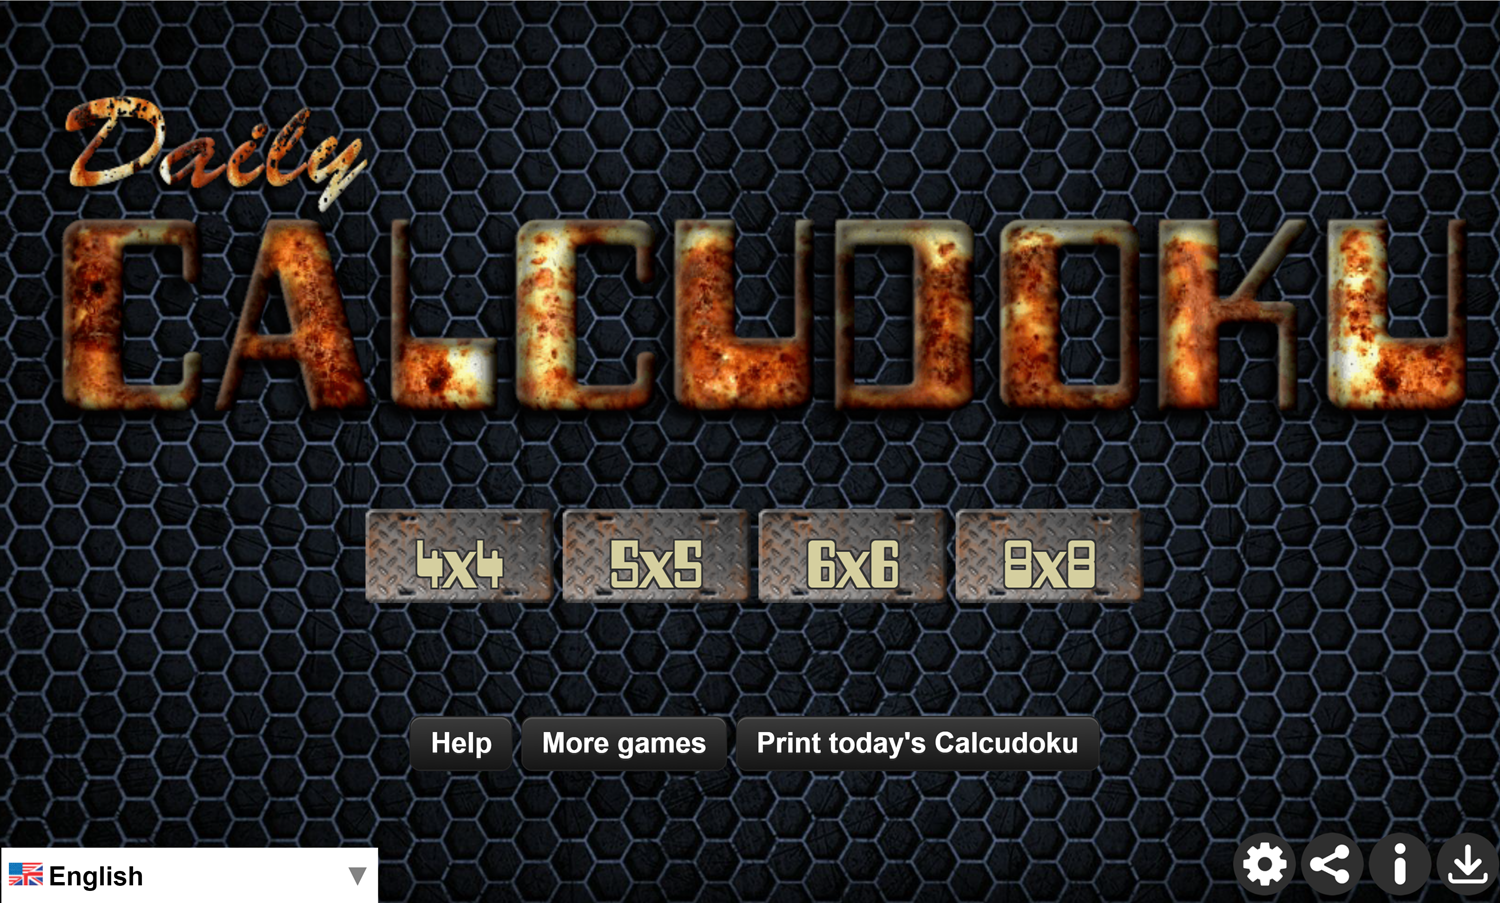 Daily Calcudoku Game Welcome Screen Screenshot.